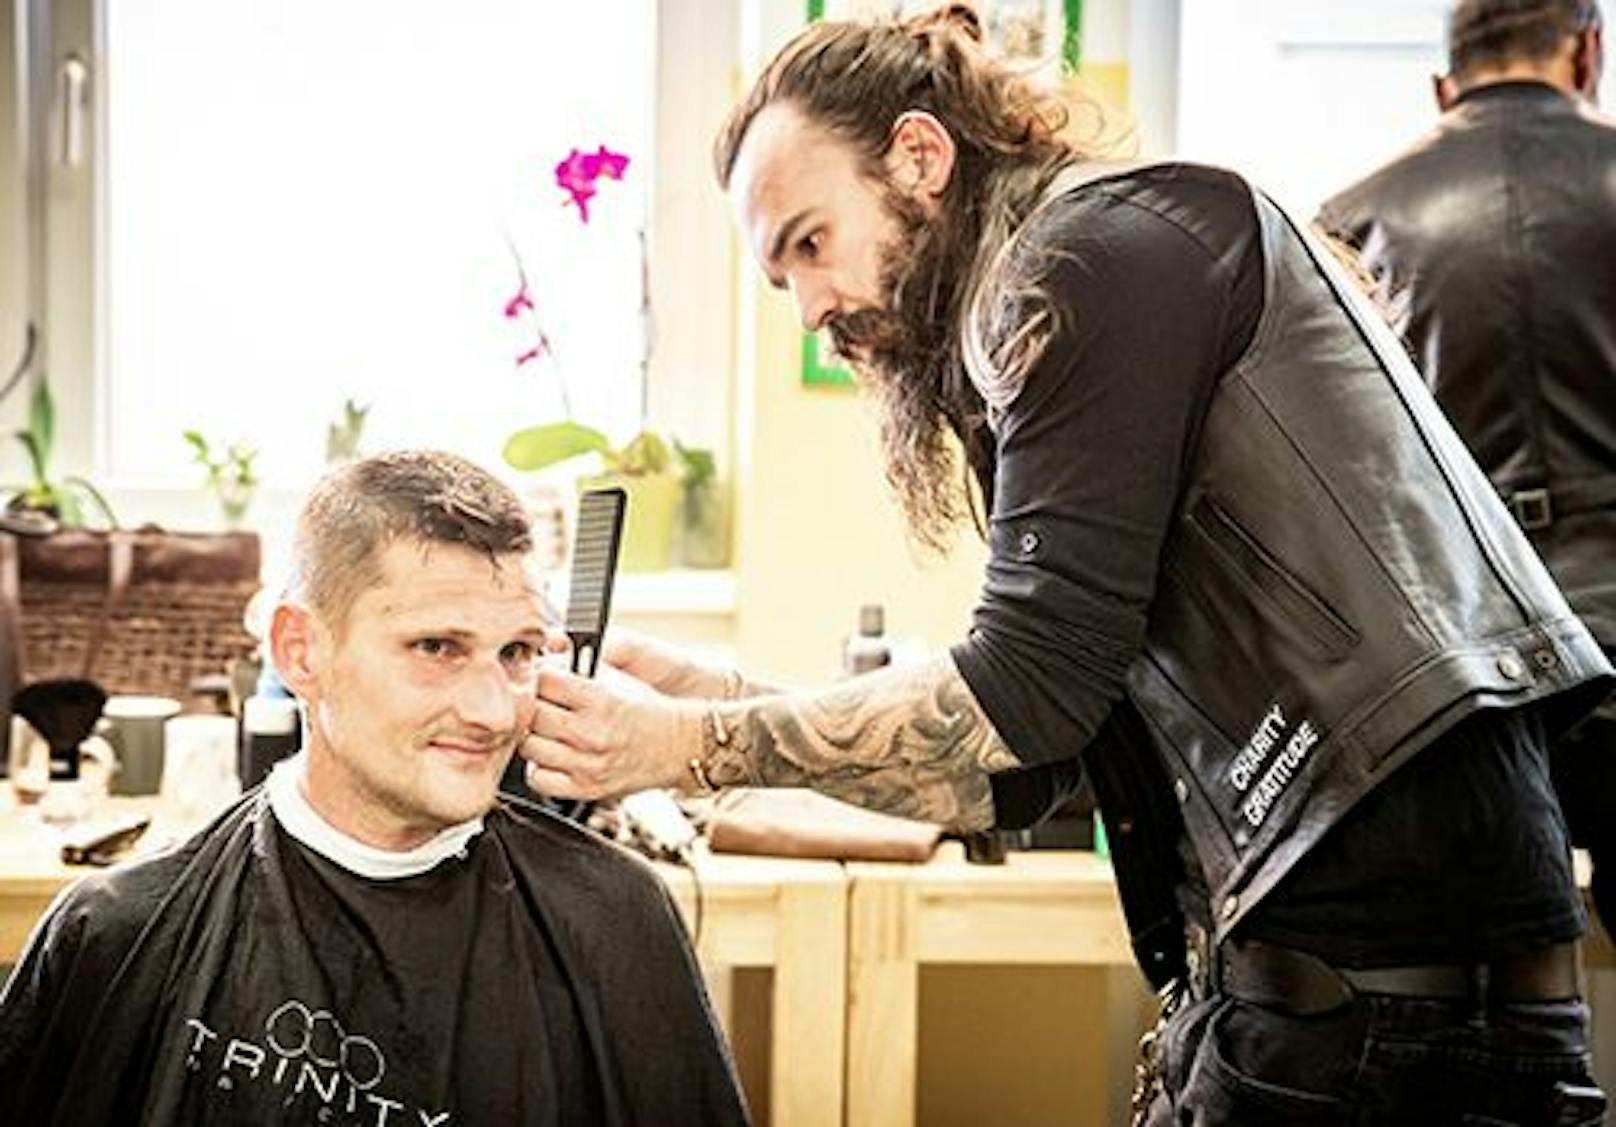 Die "Barber Angels" greifen für armutsbteroffene Menschen kostenlos zur Schere.